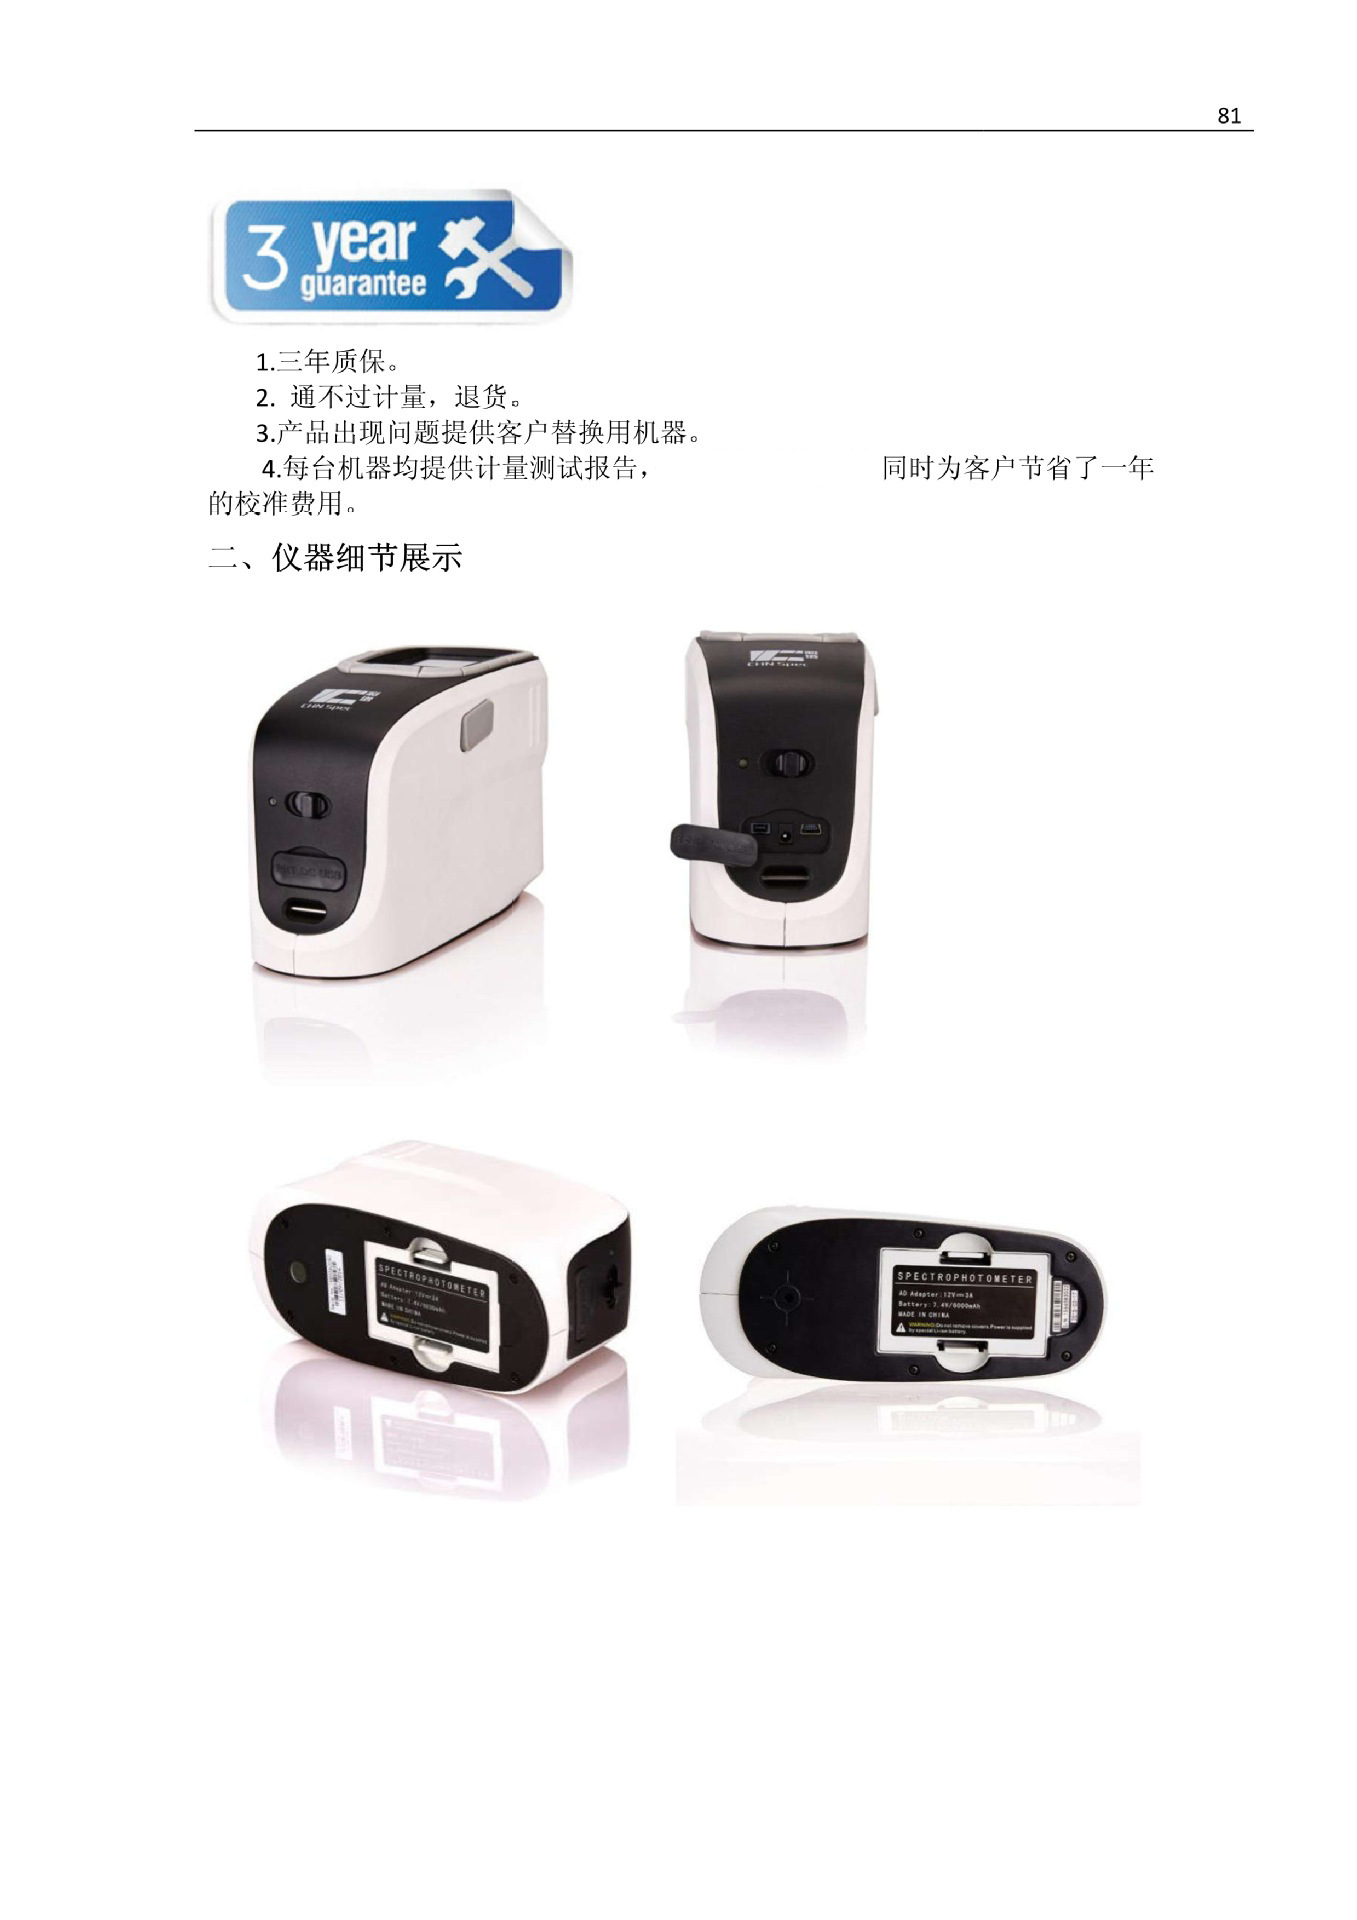 精密便携式分光测色仪CS-580 分光测色仪 替代进口品牌,超长质保示例图6